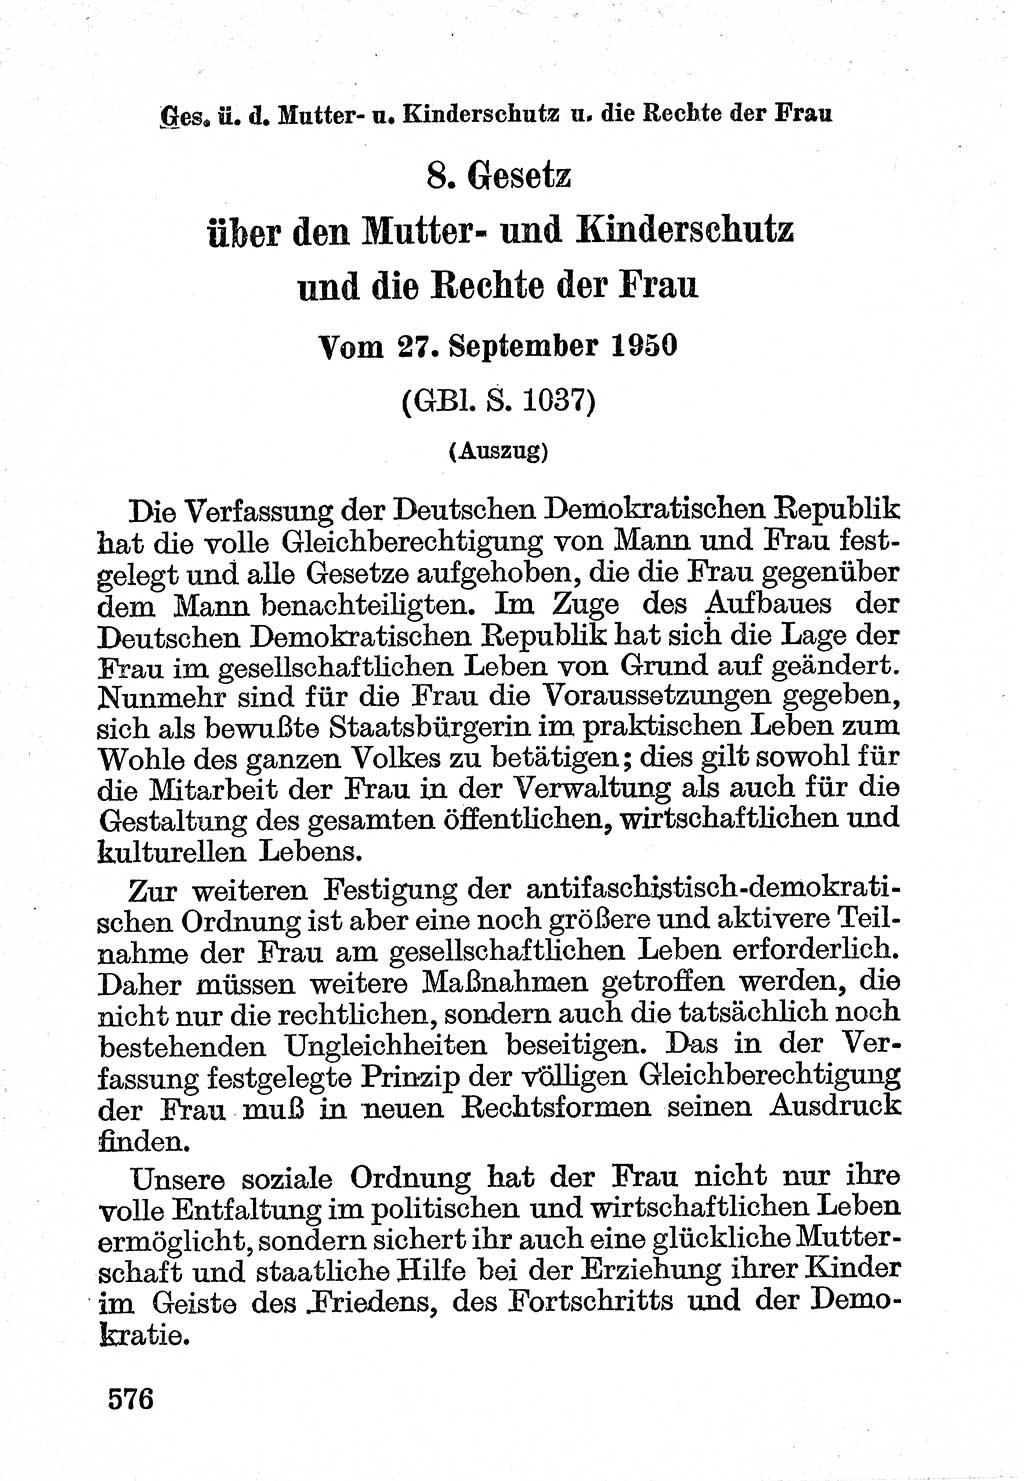 Bürgerliches Gesetzbuch (BGB) nebst wichtigen Nebengesetzen [Deutsche Demokratische Republik (DDR)] 1956, Seite 576 (BGB Nebenges. DDR 1956, S. 576)